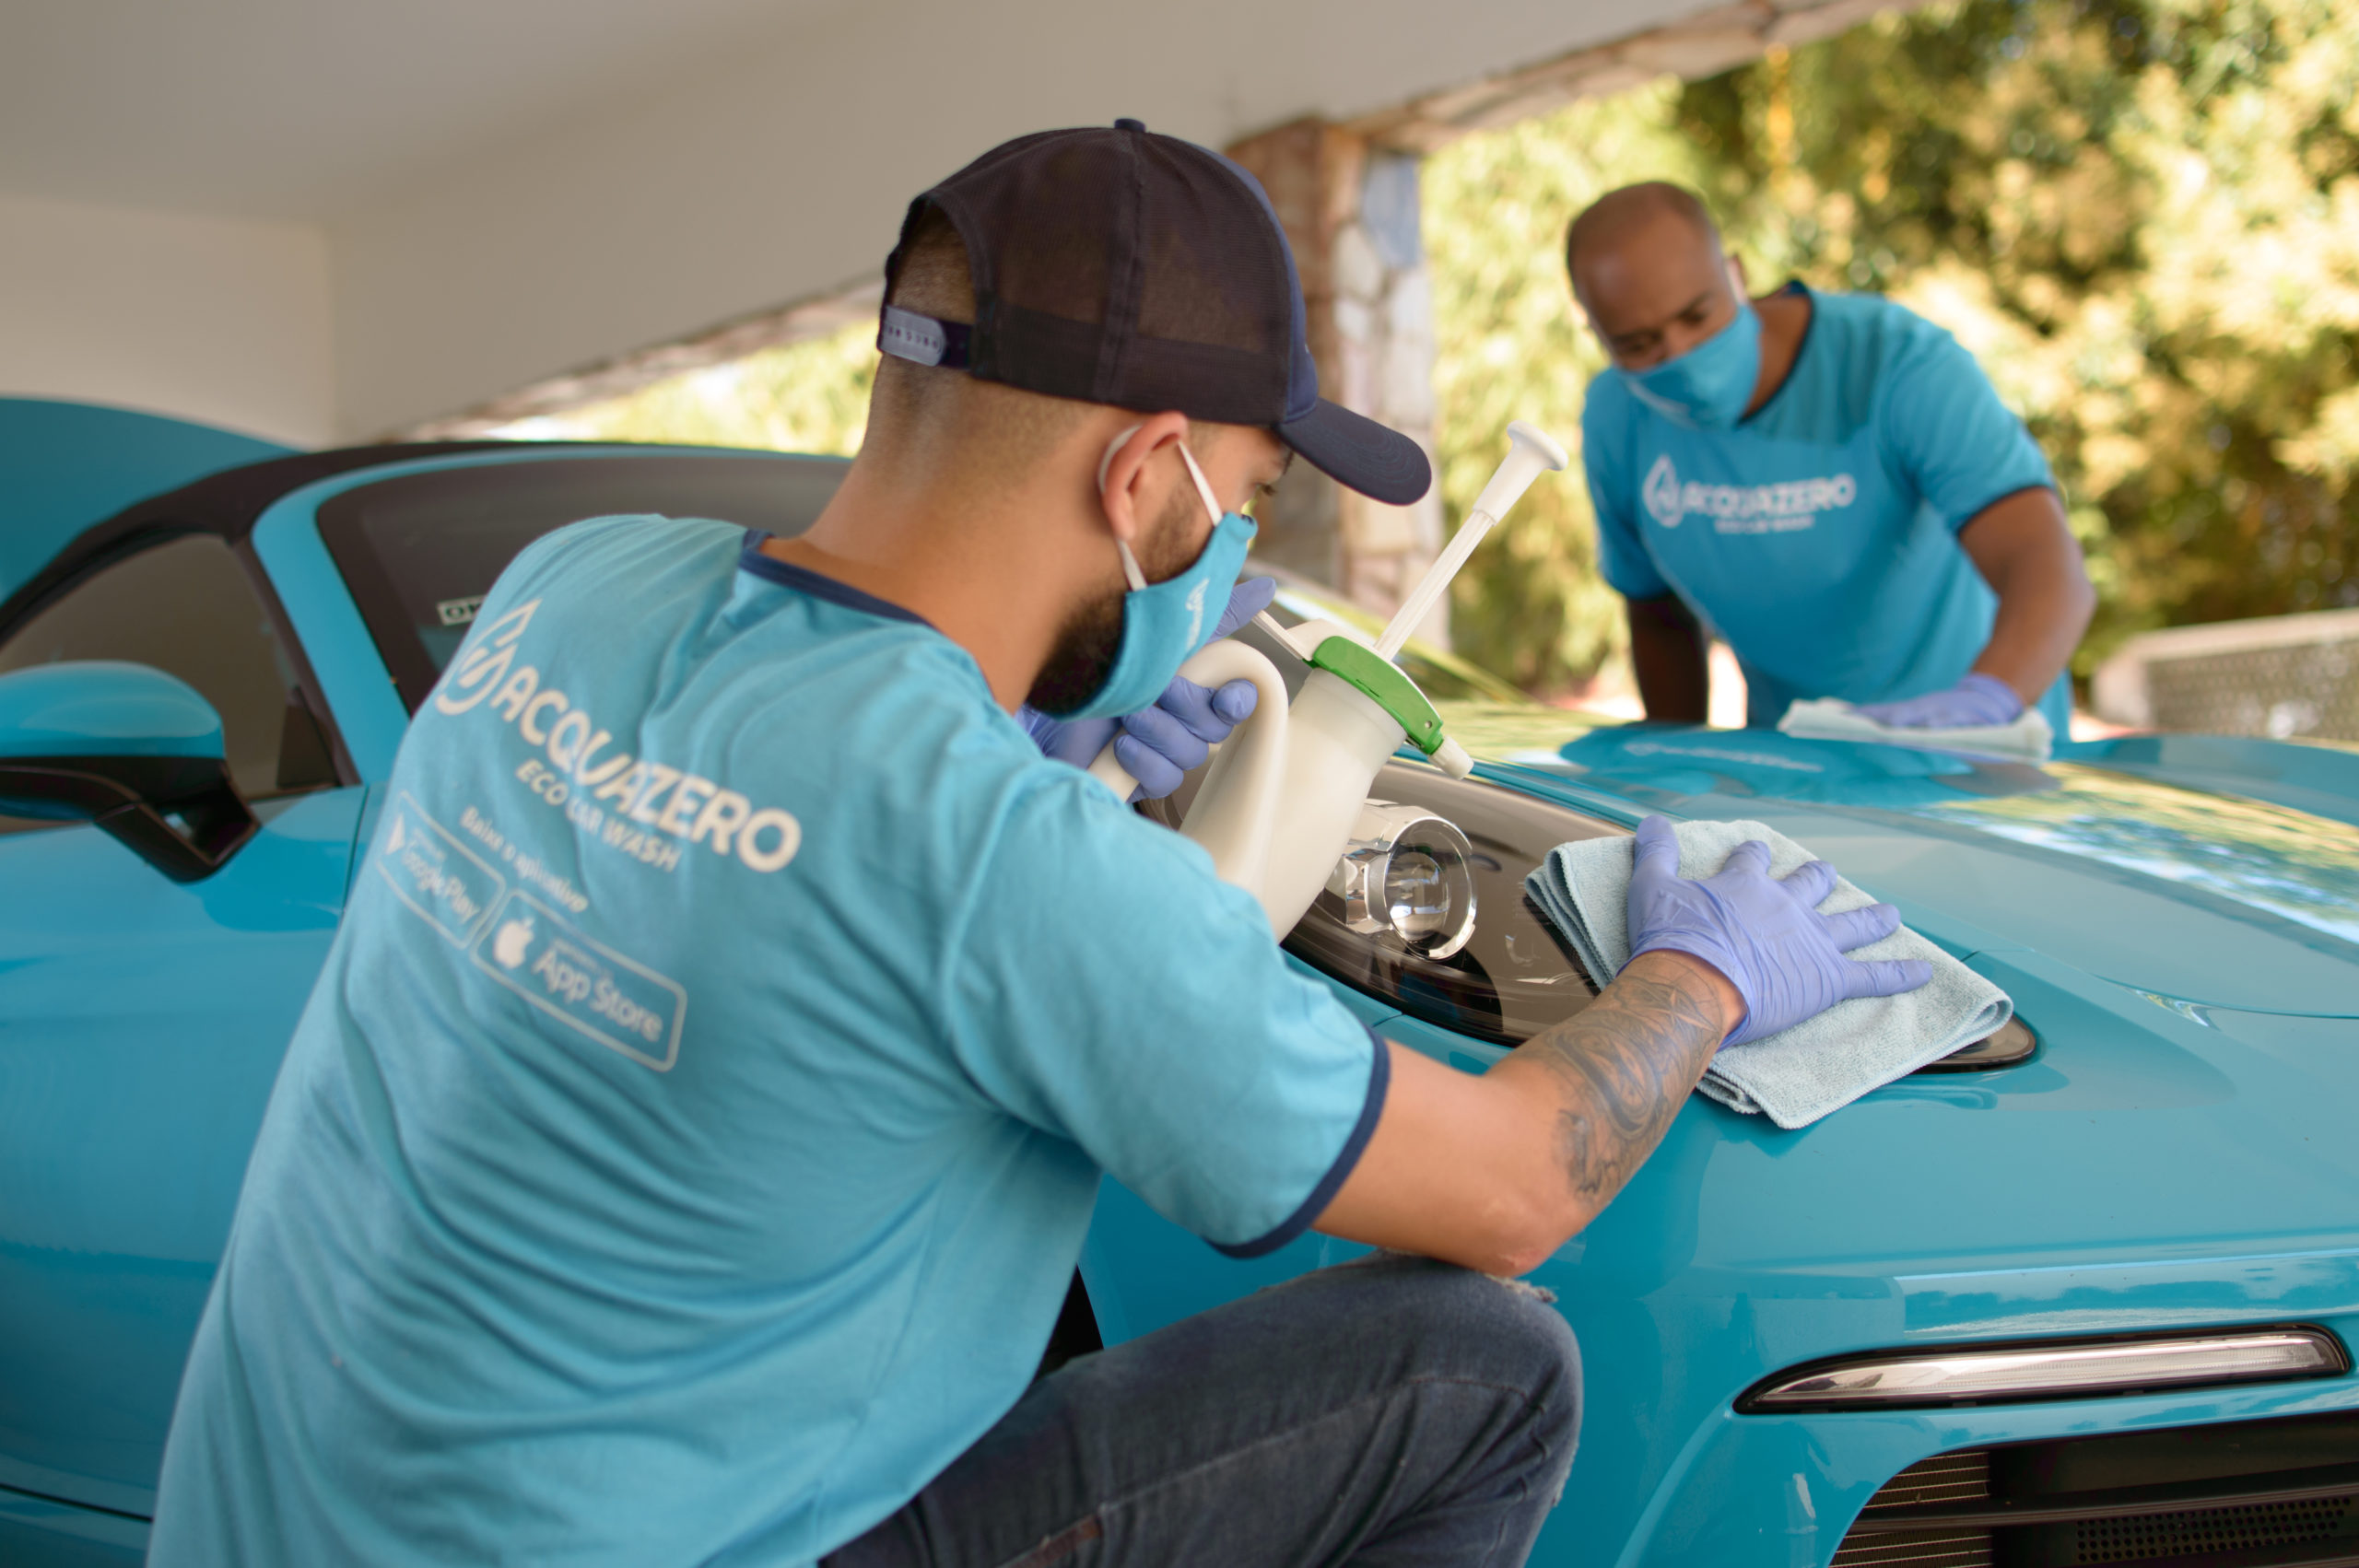 Dois homens com a camisa da Acquazero fazendo a limpeza de um carro azul.